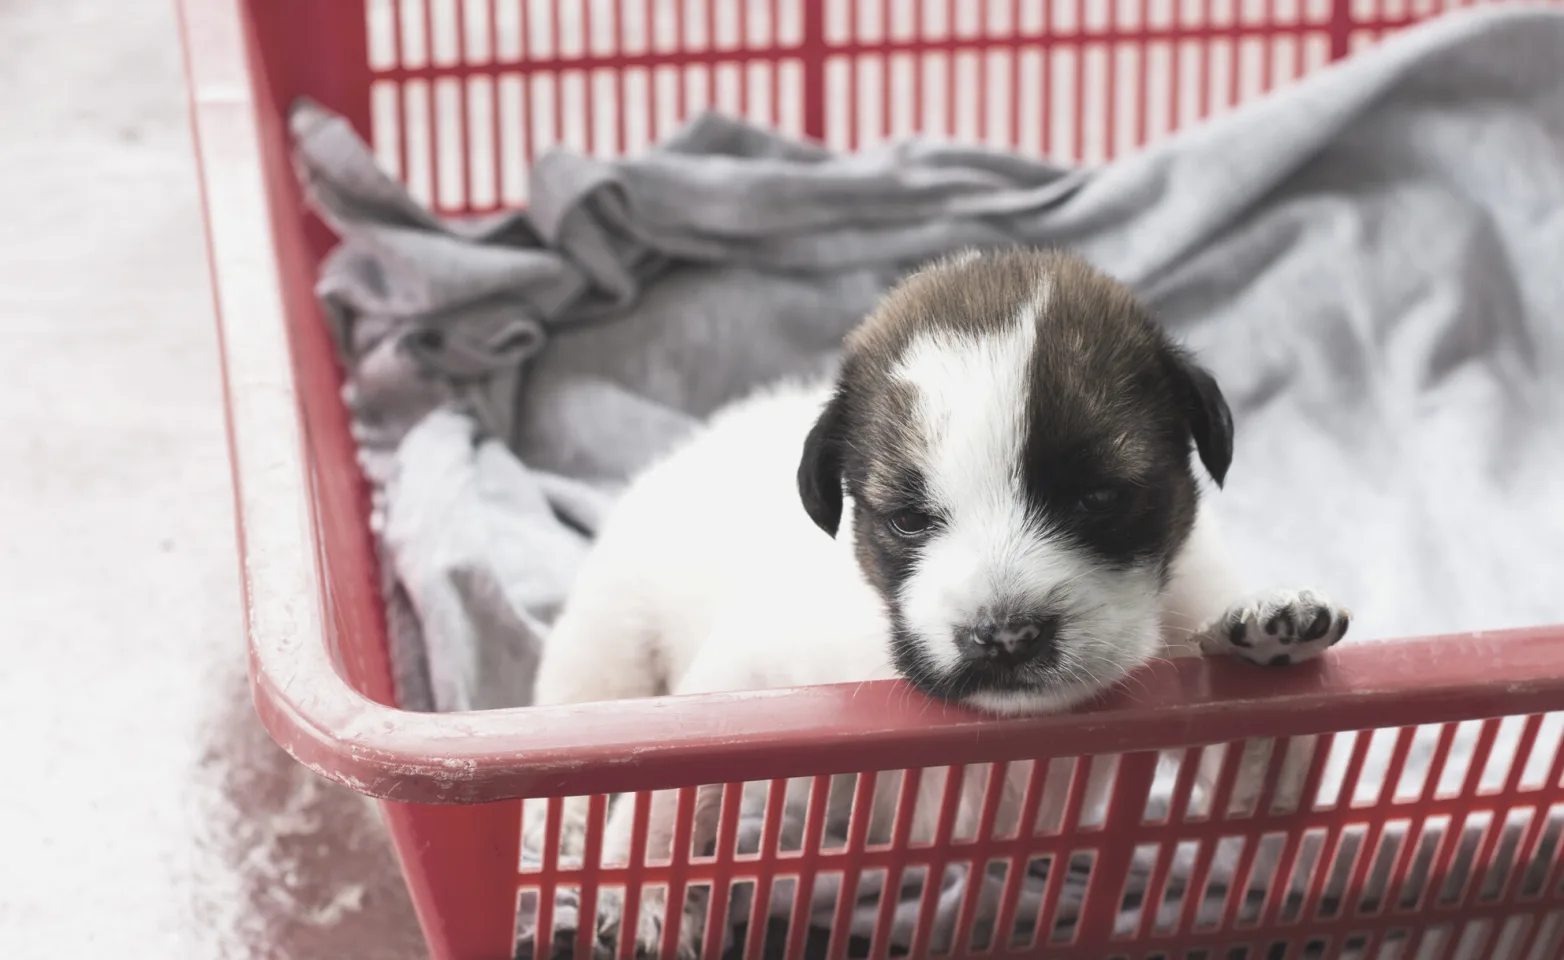 Puppy in a basket.